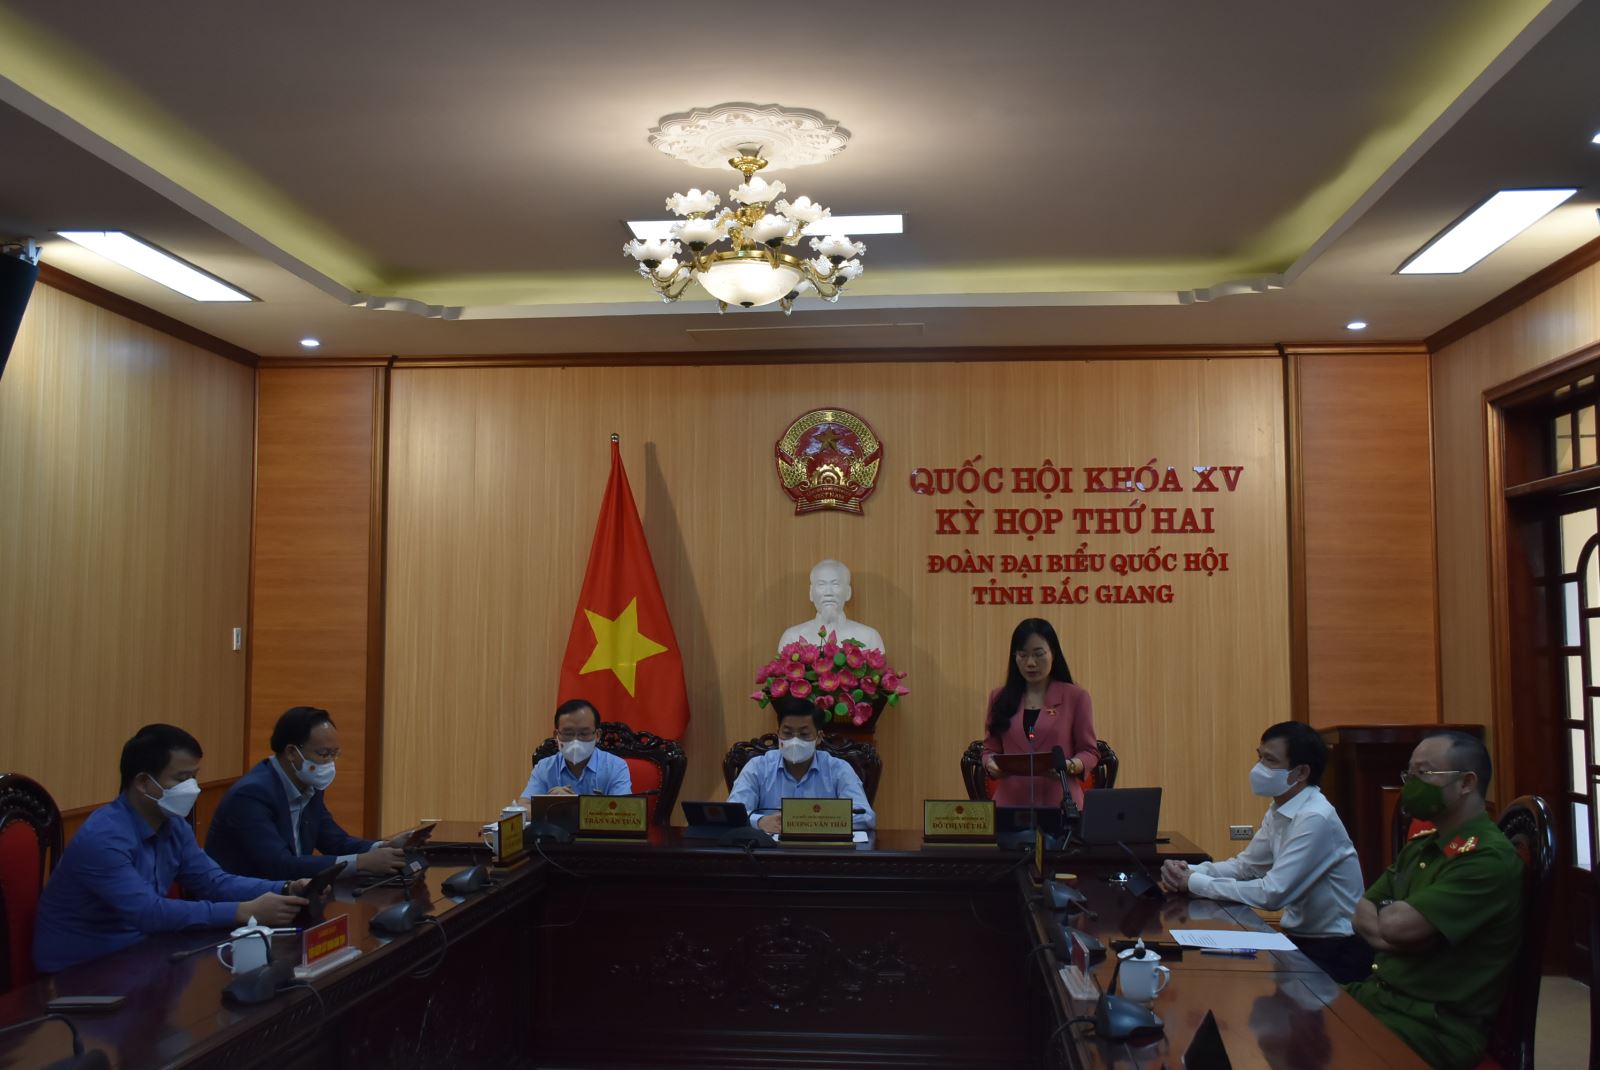 Toàn cảnh phiên thảo luận tại điểm cầu tỉnh Bắc Giang